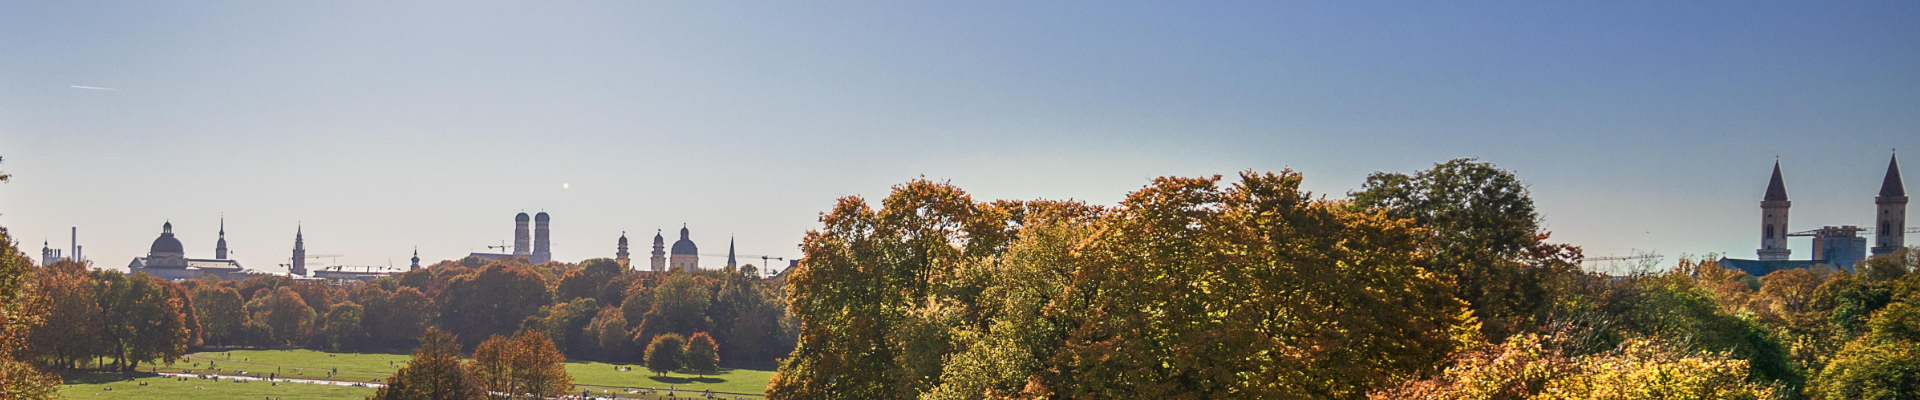 Panorama von München mit Englischem Garten © CC0, Pixabay 